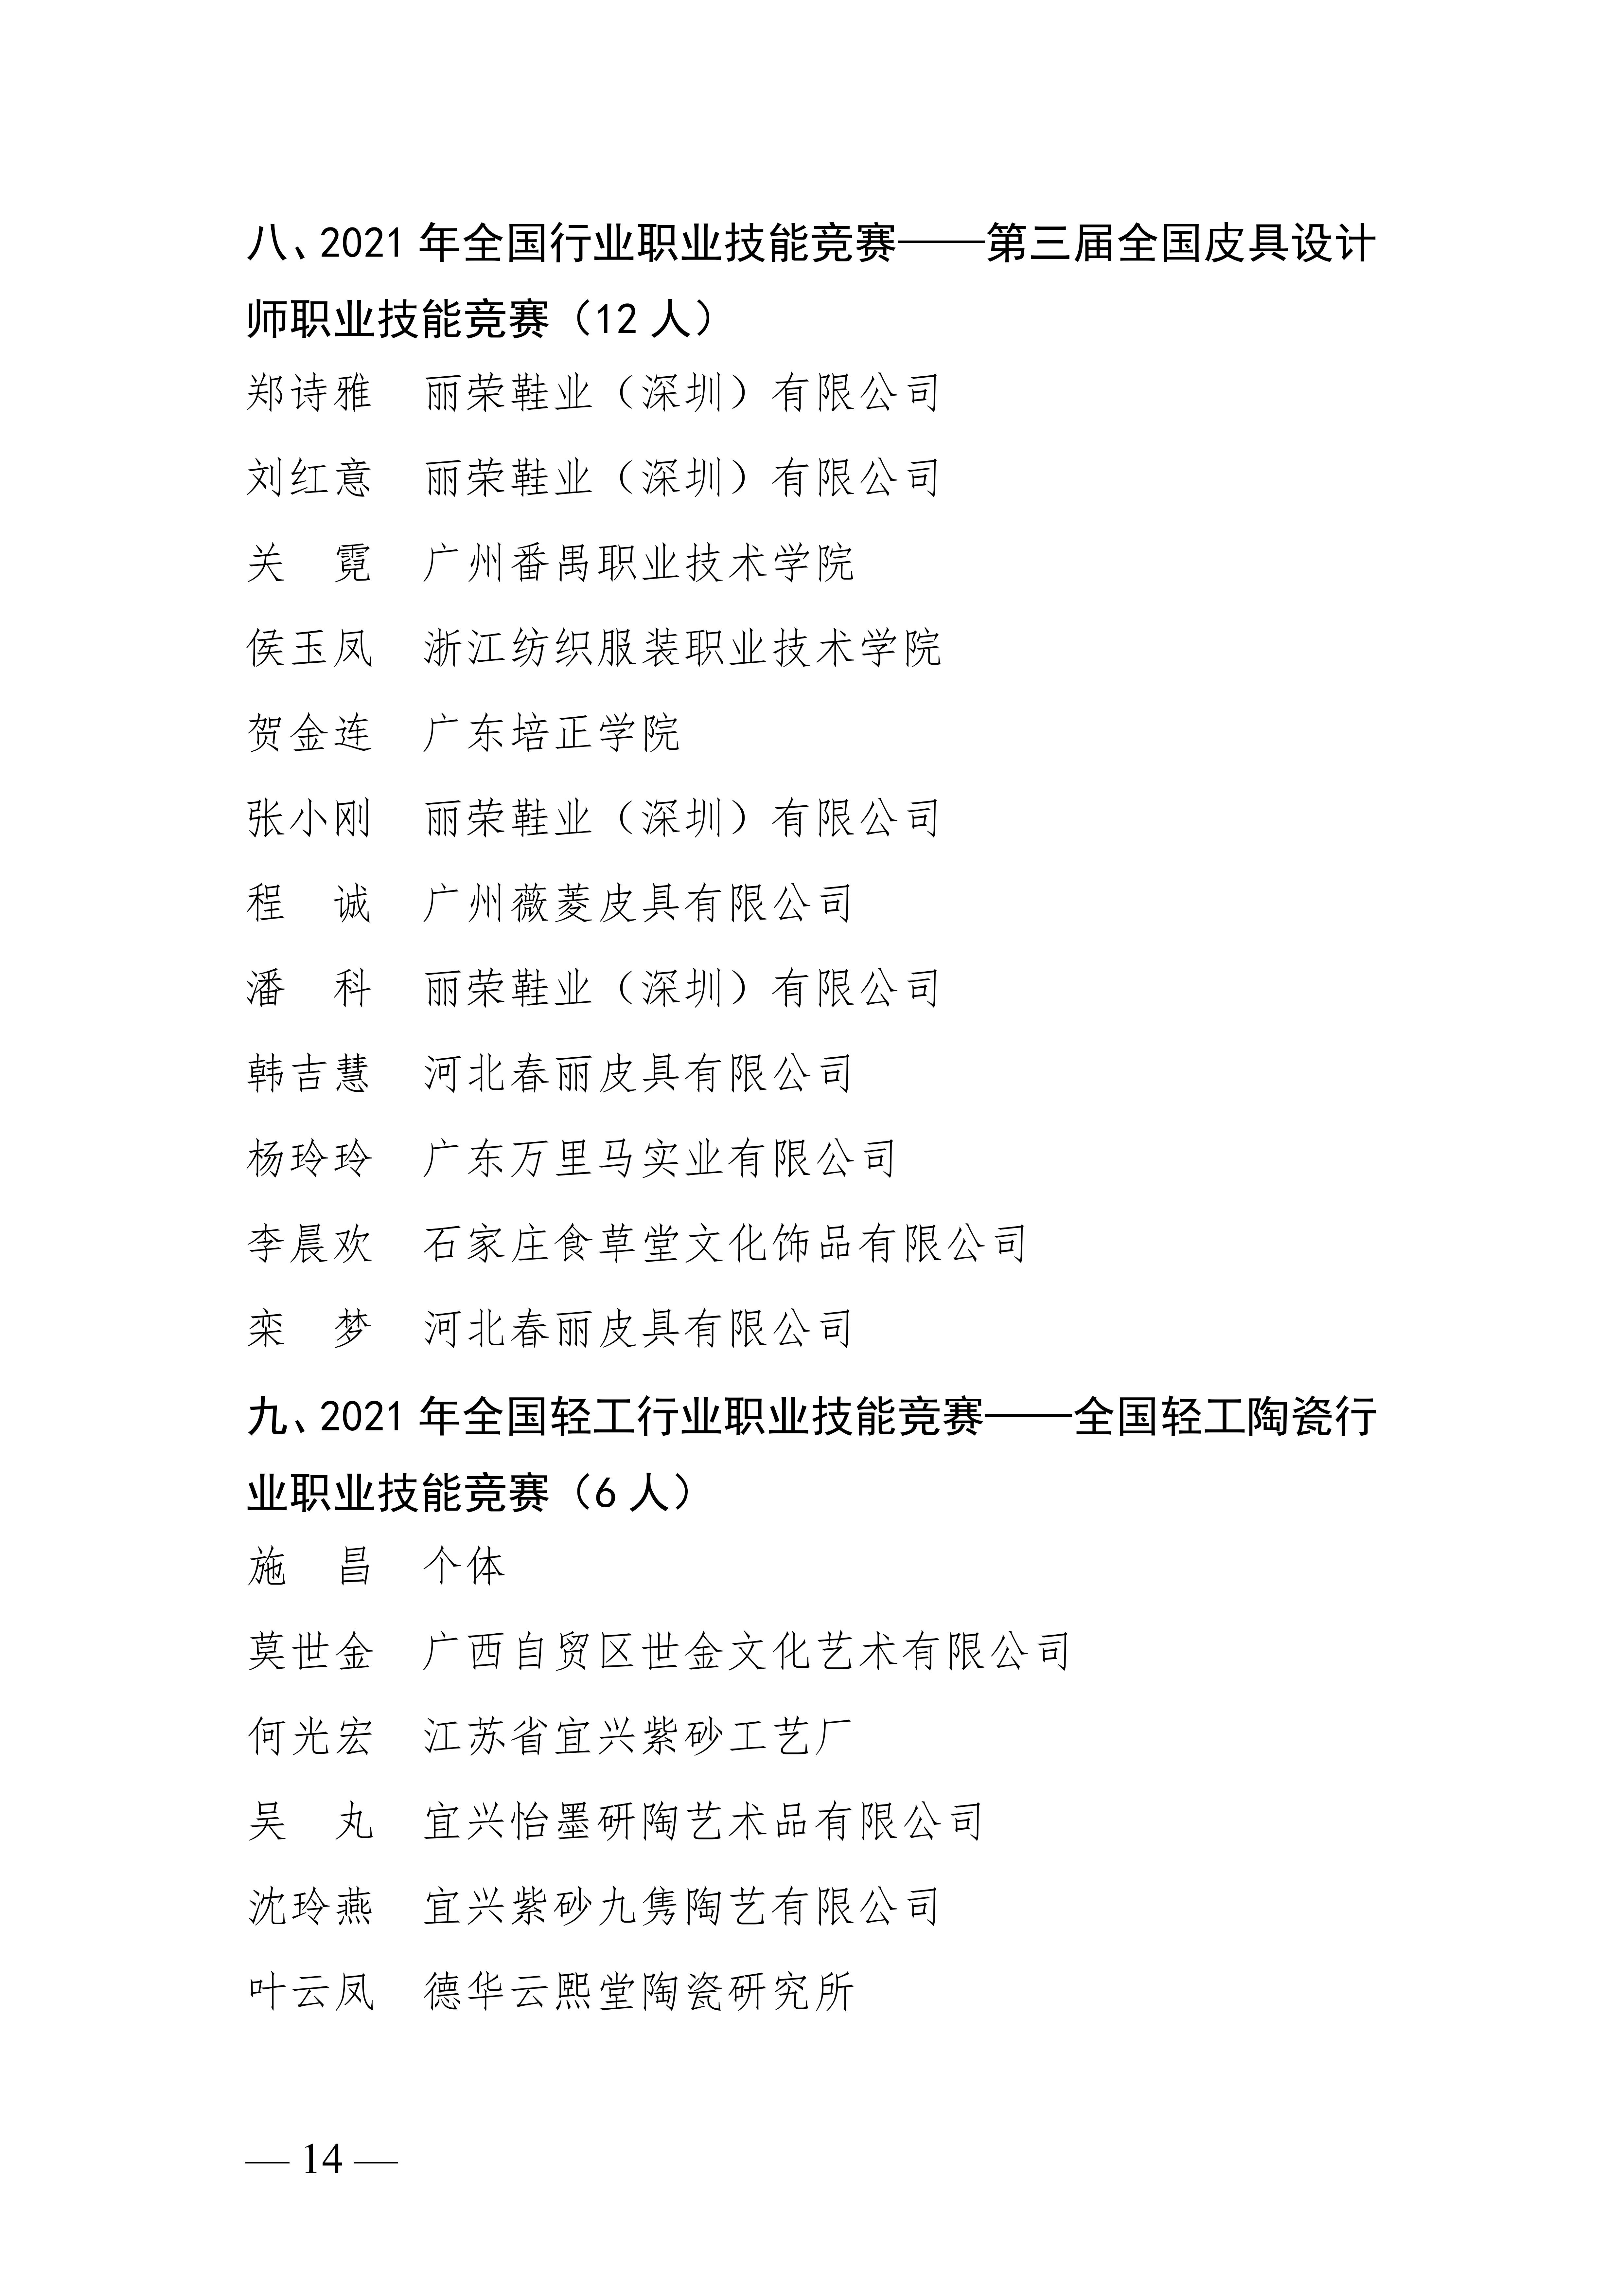 关于授予张宇鹏等252名同志“全国轻工技术能手”荣誉称号的决定_13.jpg